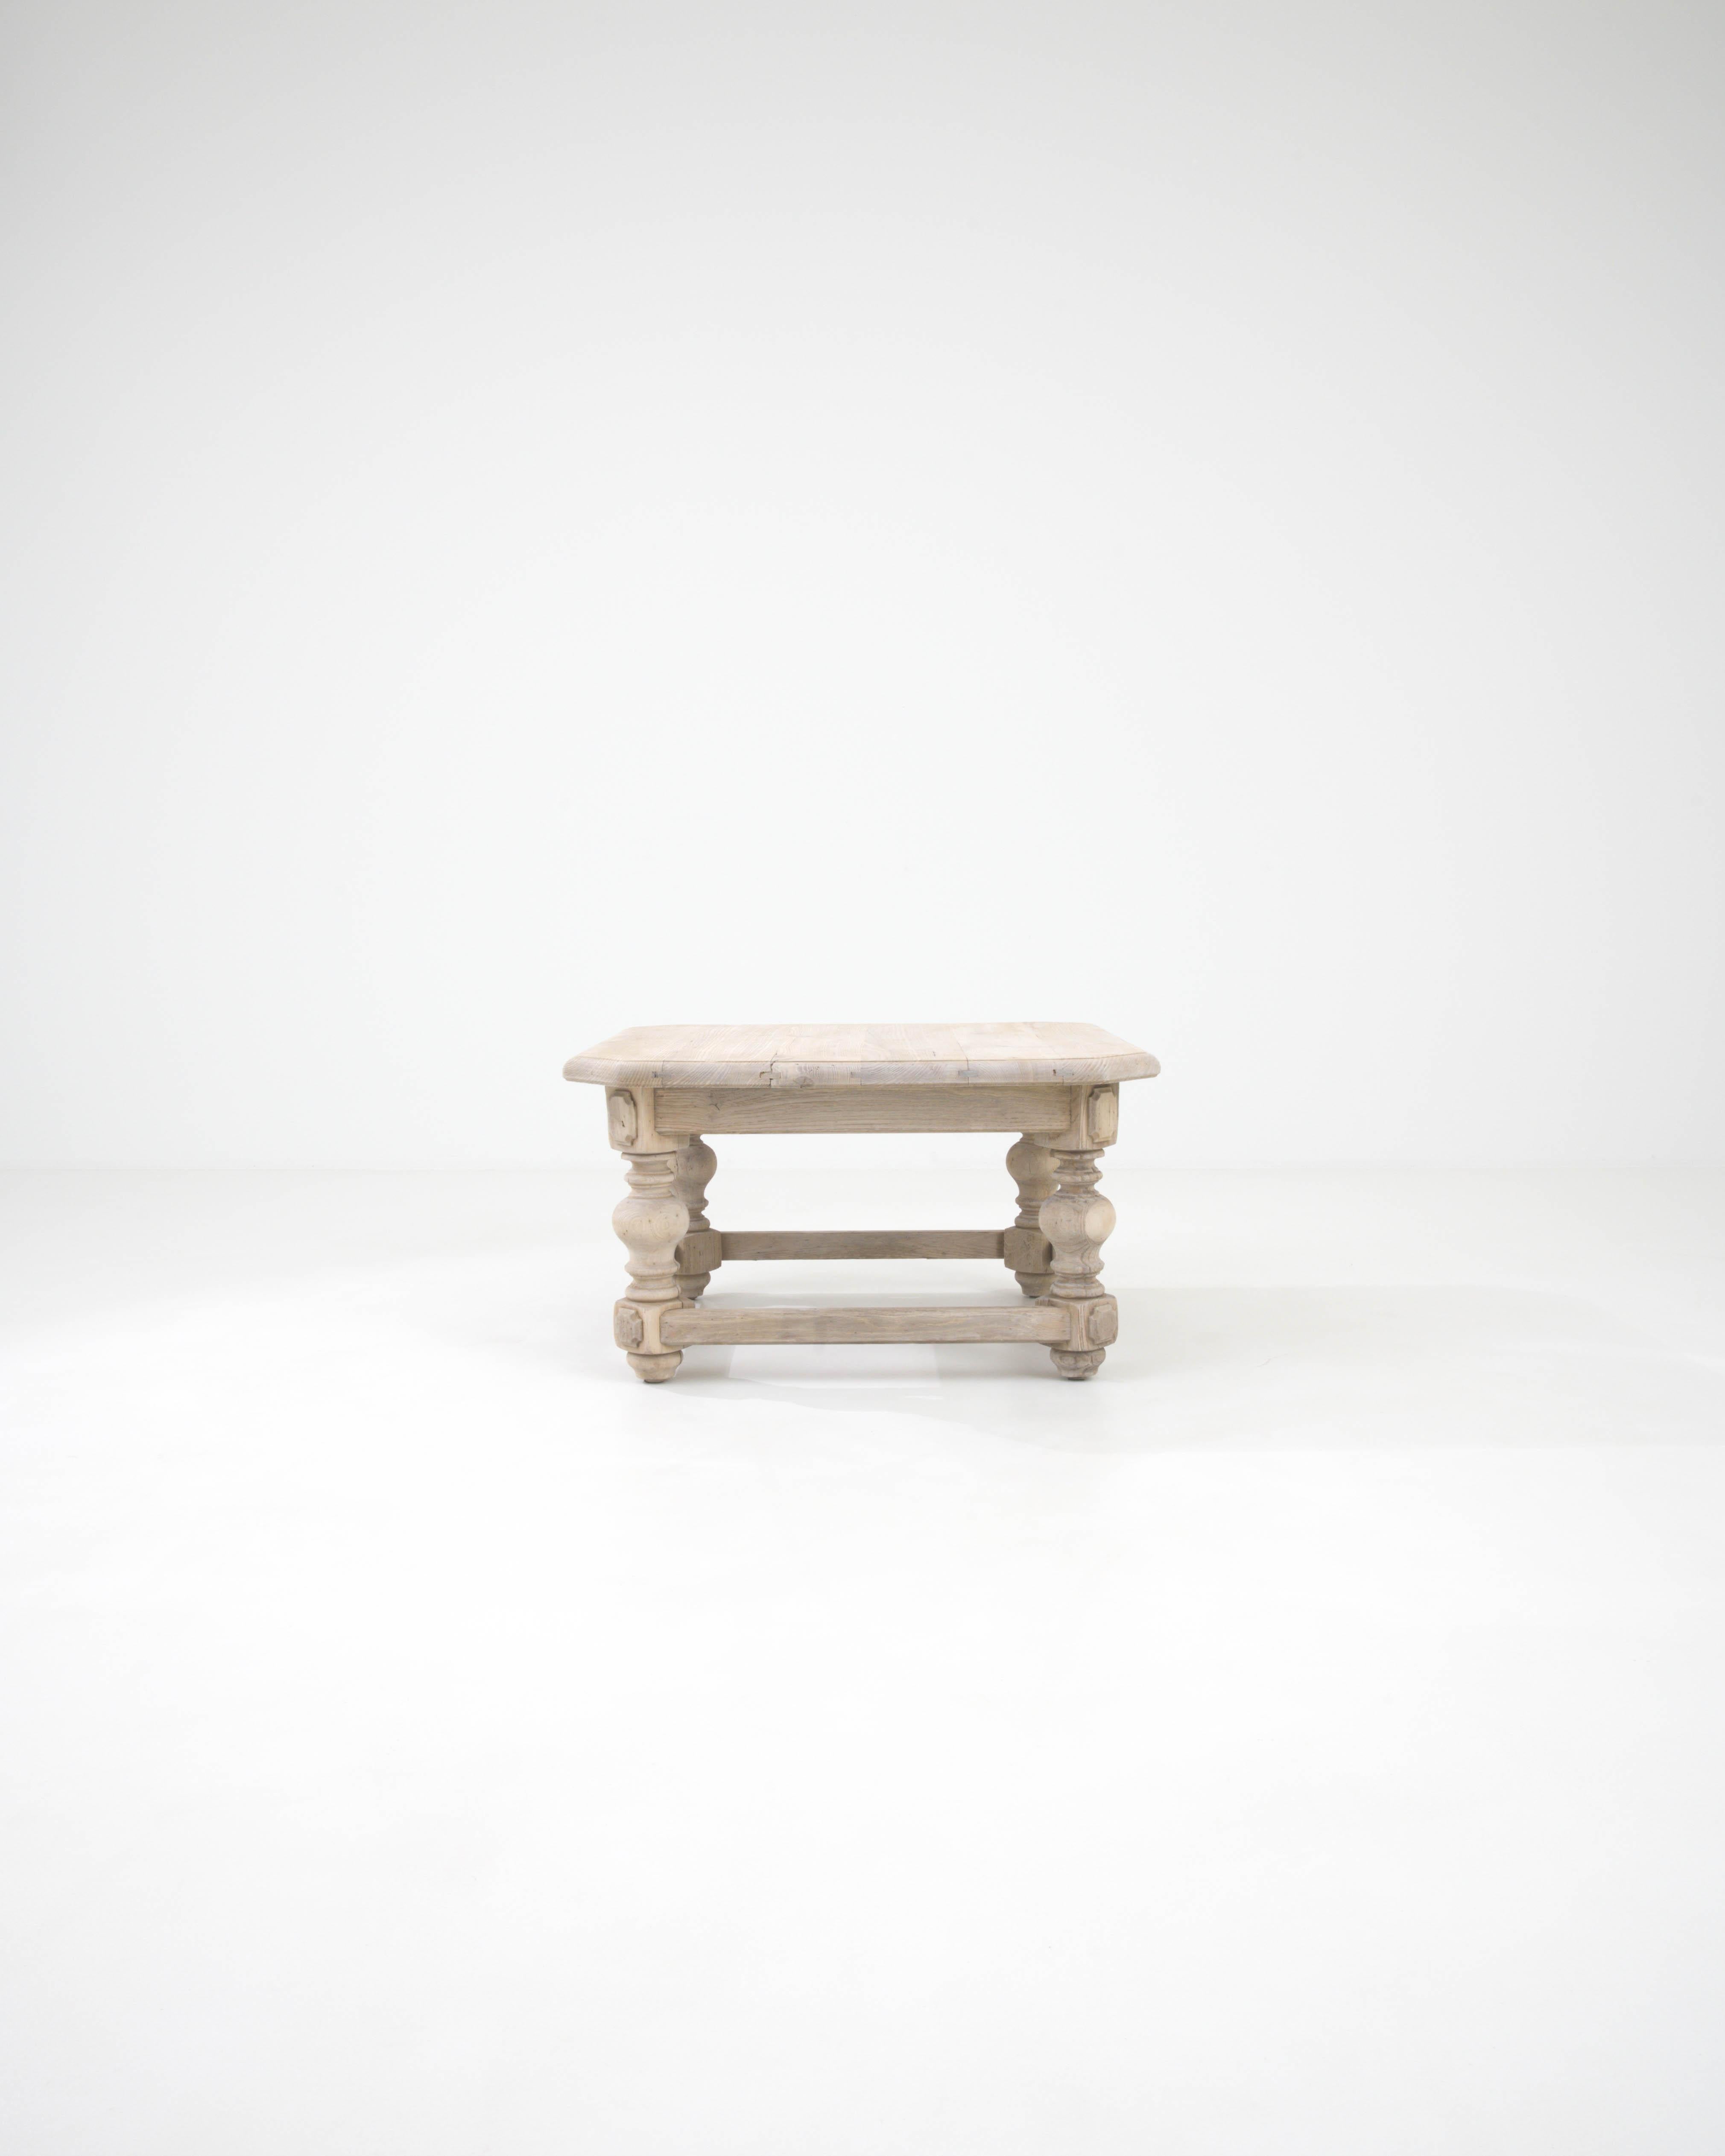 Découvrez l'incarnation de l'élégance discrète avec cette table basse en chêne blanchi belge du 20e siècle. Chaque ligne et chaque courbe sont soigneusement élaborées, ce qui donne un design solide et robuste qui invite à se rassembler autour pour